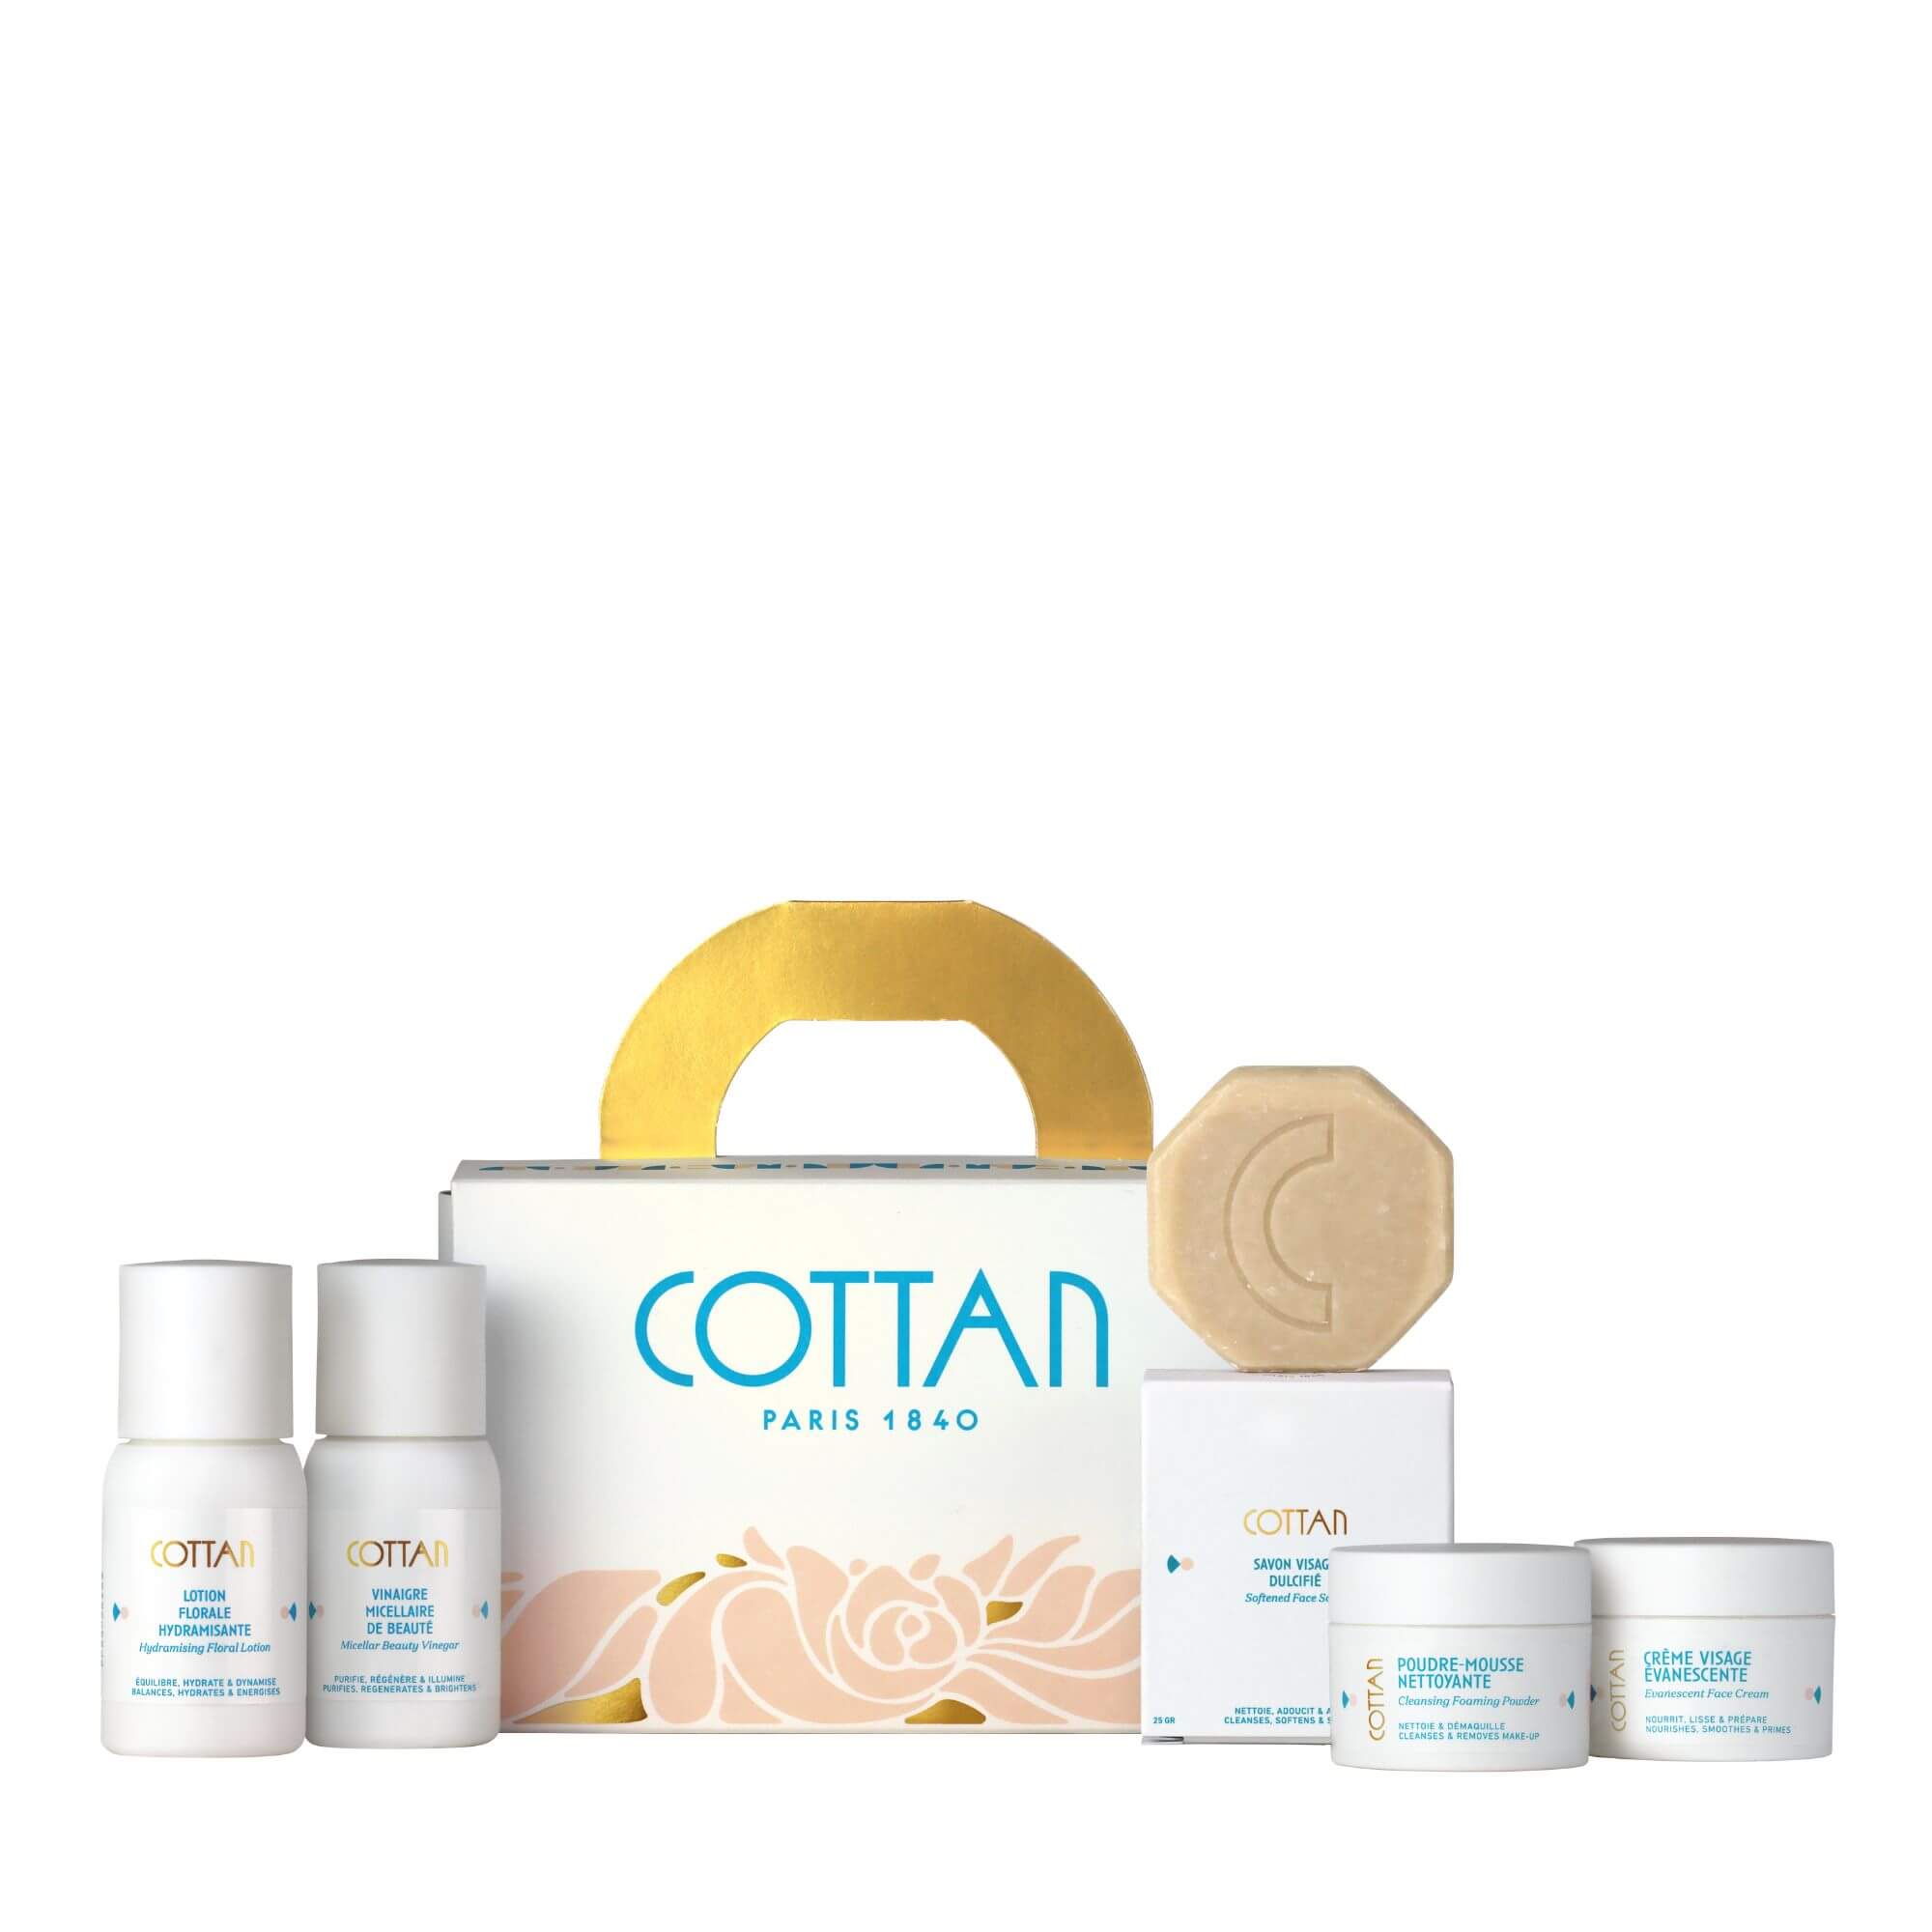 Coffret cadeau COTTAN "Rituel Arsène" pour le soin du visage en format voyage, de face avec le savon octogonal à côté. La boîte blanche et dorée affiche le logo bleu COTTAN, mettant en valeur le savon et les autres produits de soin.